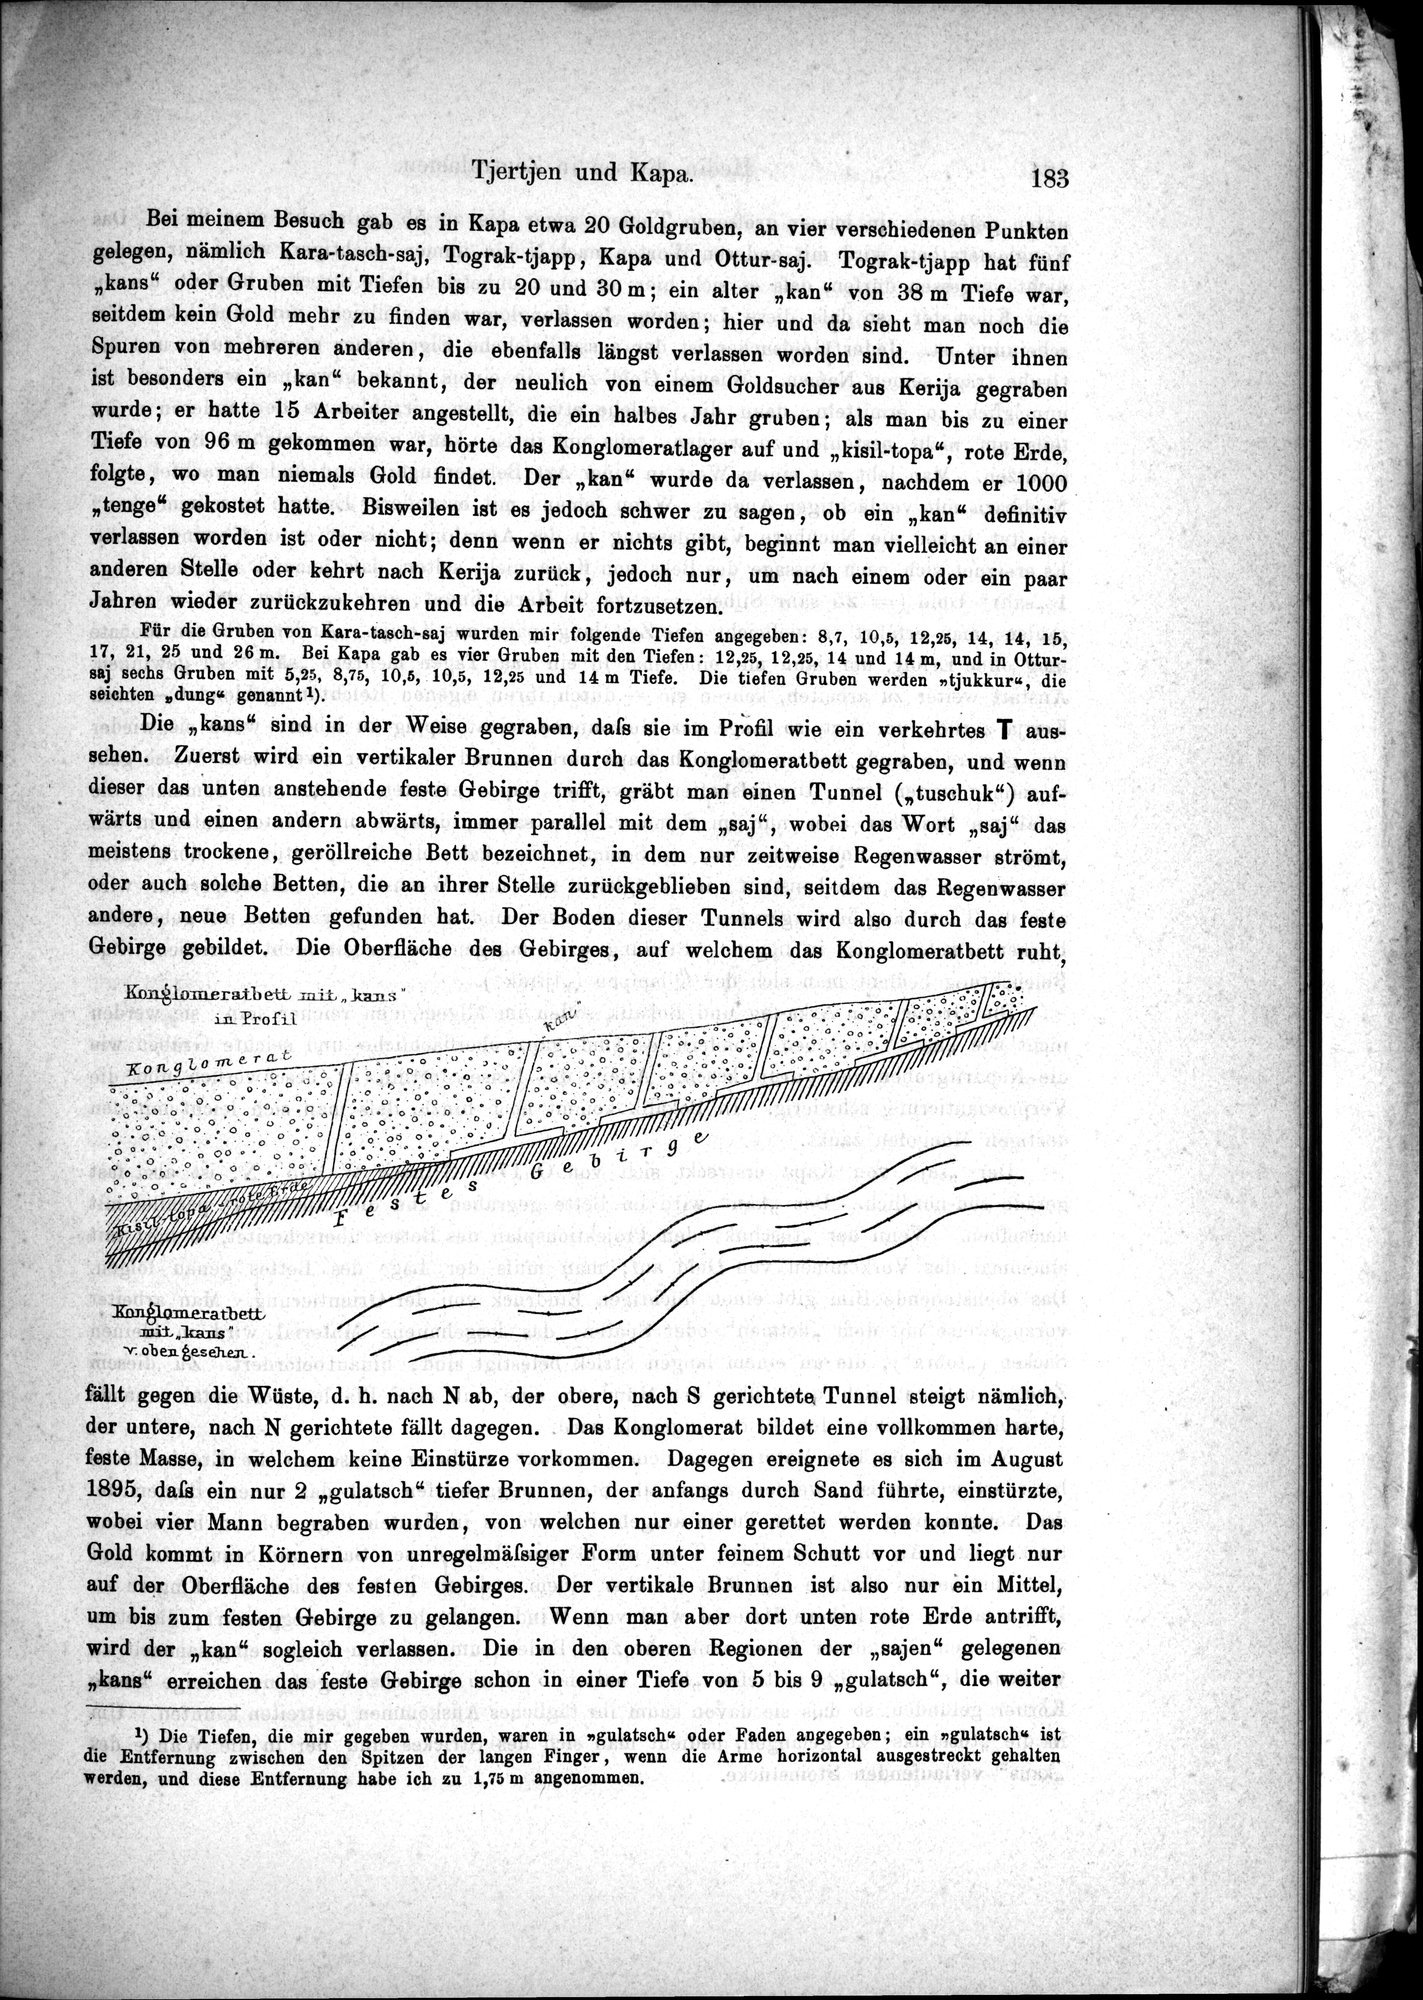 Die Geographische-Wissenschaftlichen Ergebnisse meiner Reisen in Zentralasien, 1894-1897 : vol.1 / Page 195 (Grayscale High Resolution Image)